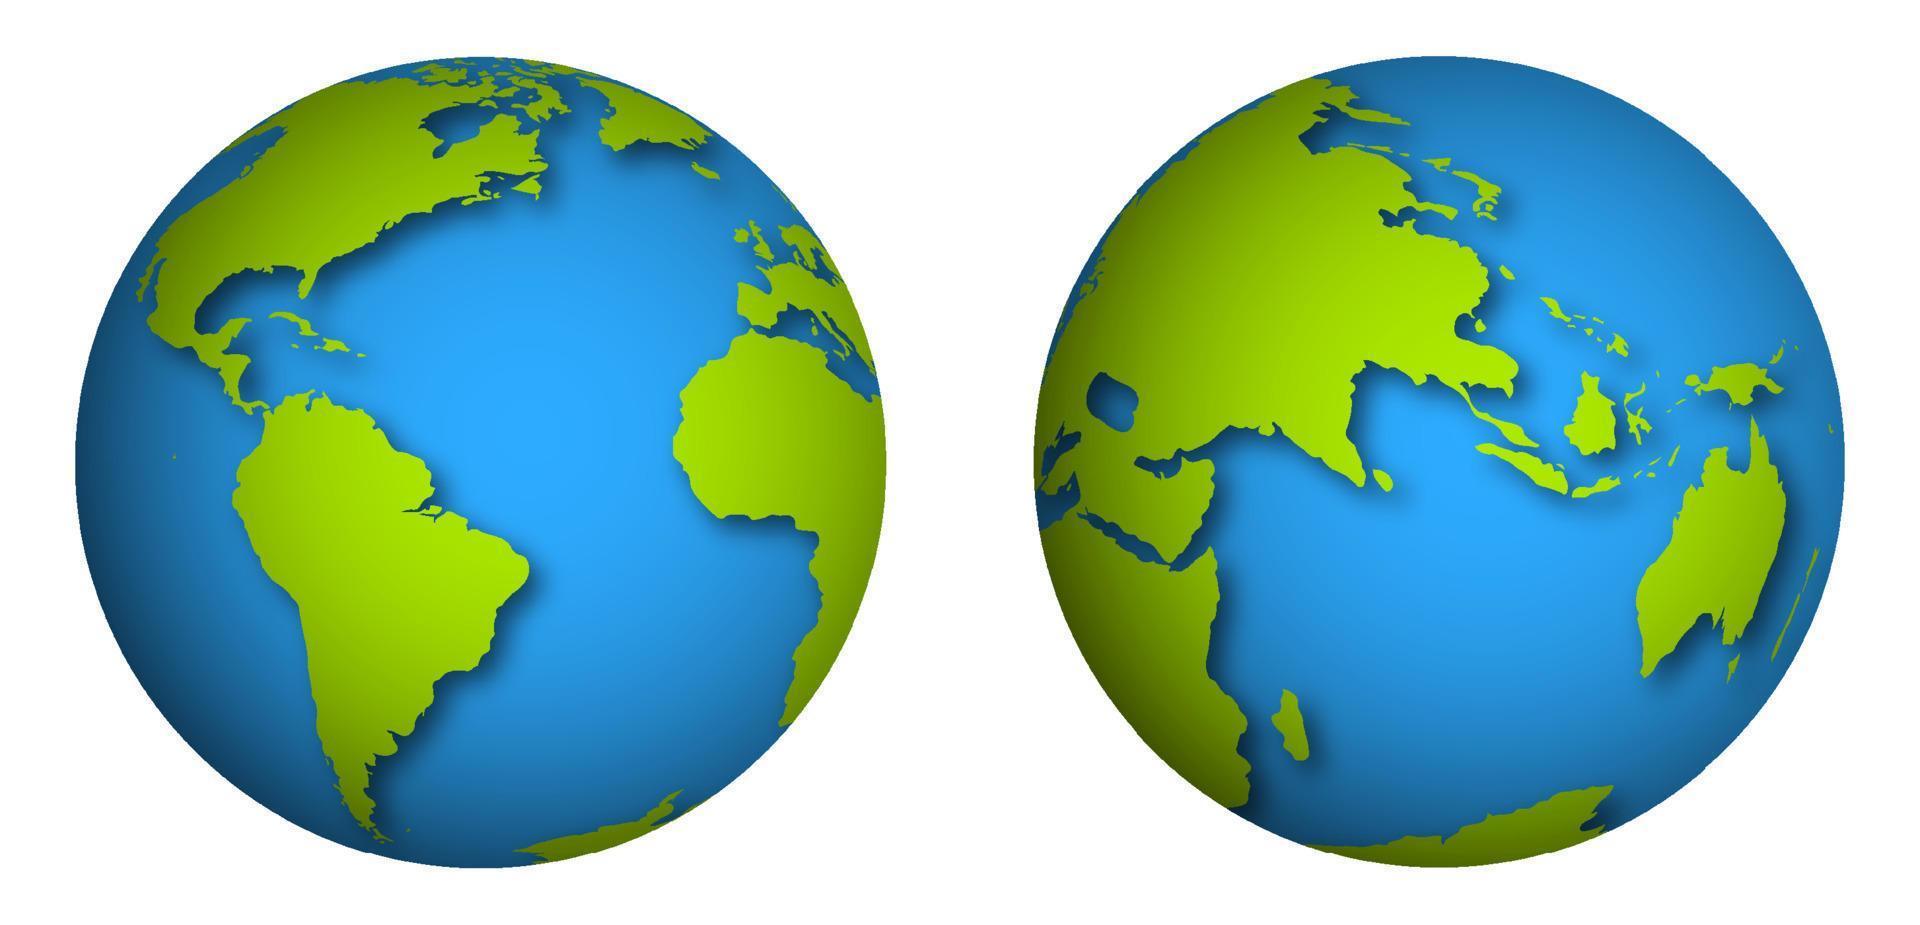 globo, planeta tierra. icono realista de los hemisferios terrestres en color verde azul. cartografía y viajes. vector aislado sobre fondo blanco